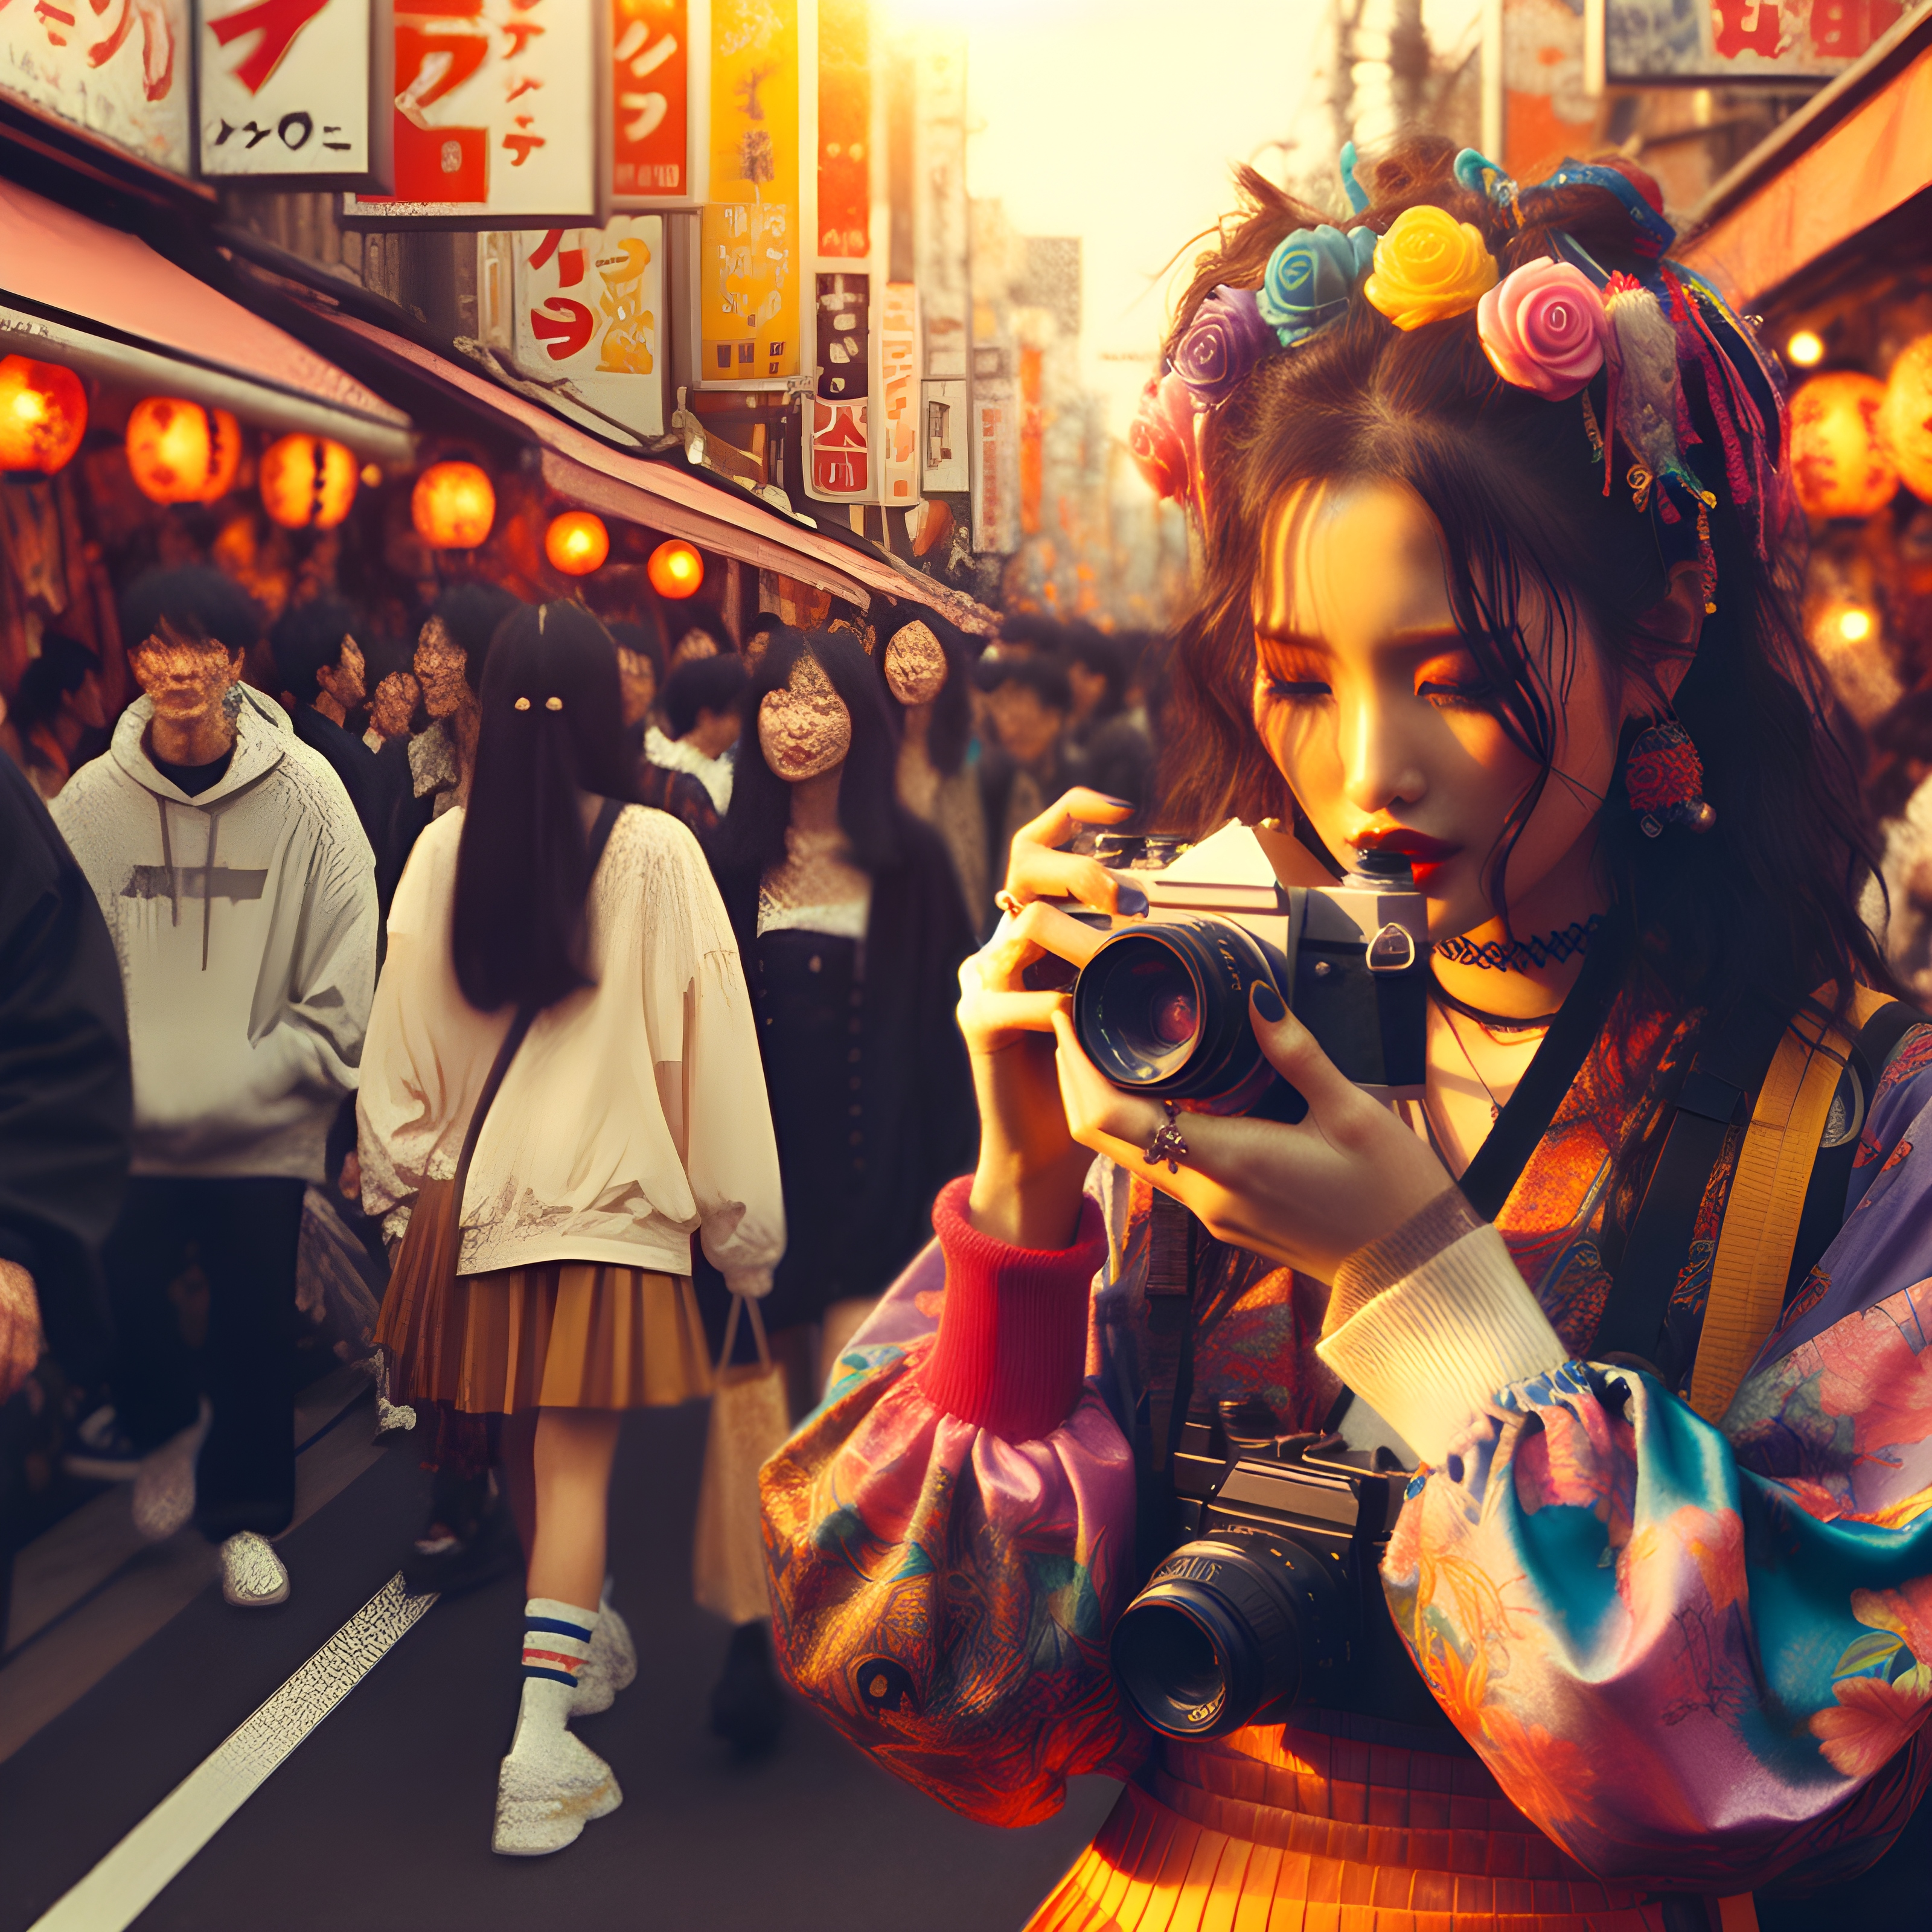 สร้างภาพ ผู้หญิง ถ่ายรูปด้วยกล้องฟิล์ม ฮาราจูกุ เหมือนจริง สมจริง คนเหมือนจริง 90's